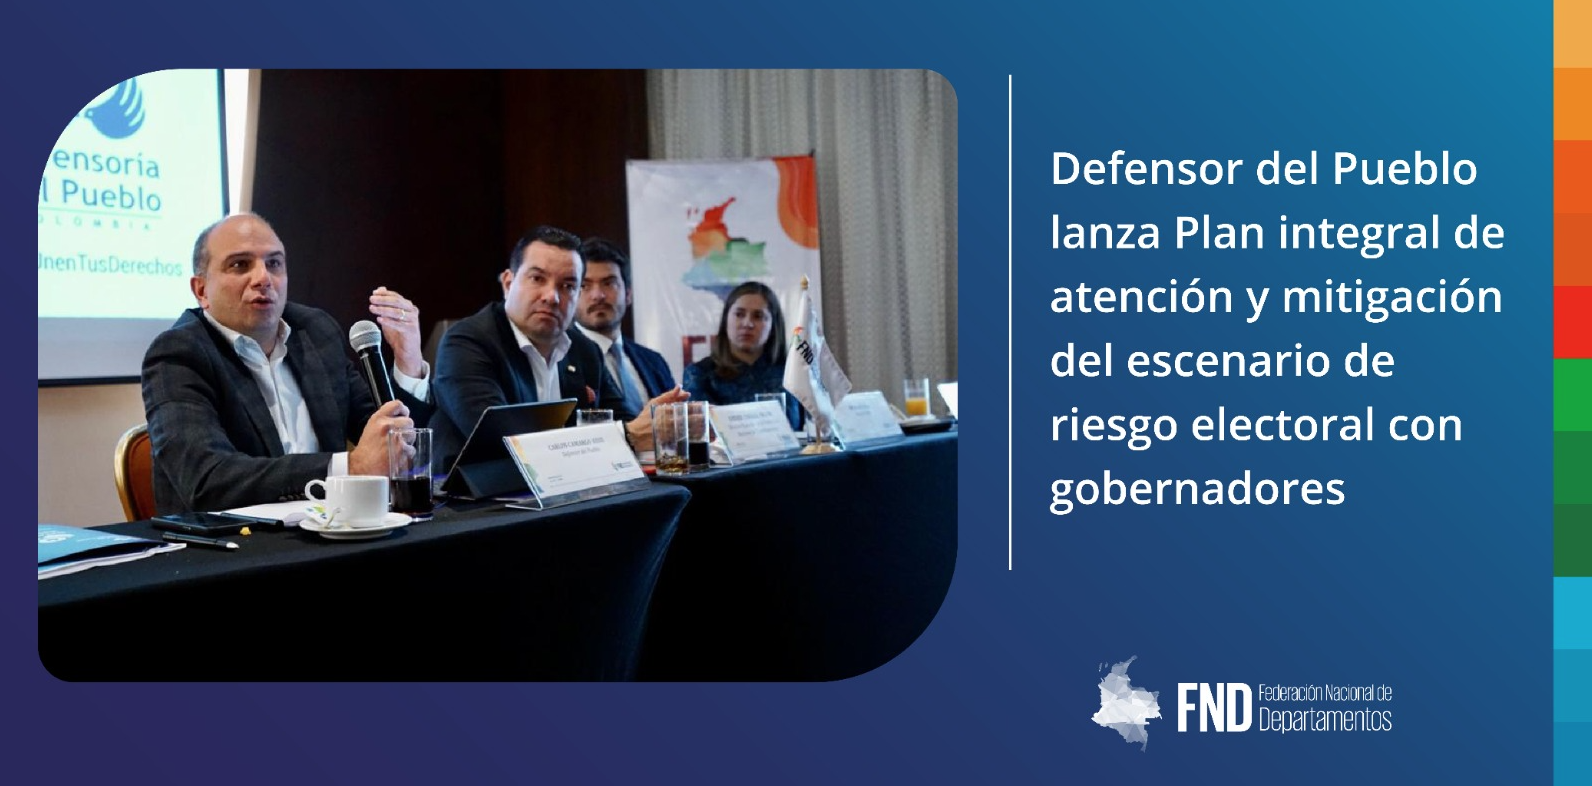 image Defensor del Pueblo lanza Plan integral de atención y mitigación del escenario de riesgo electoral con gobernadores